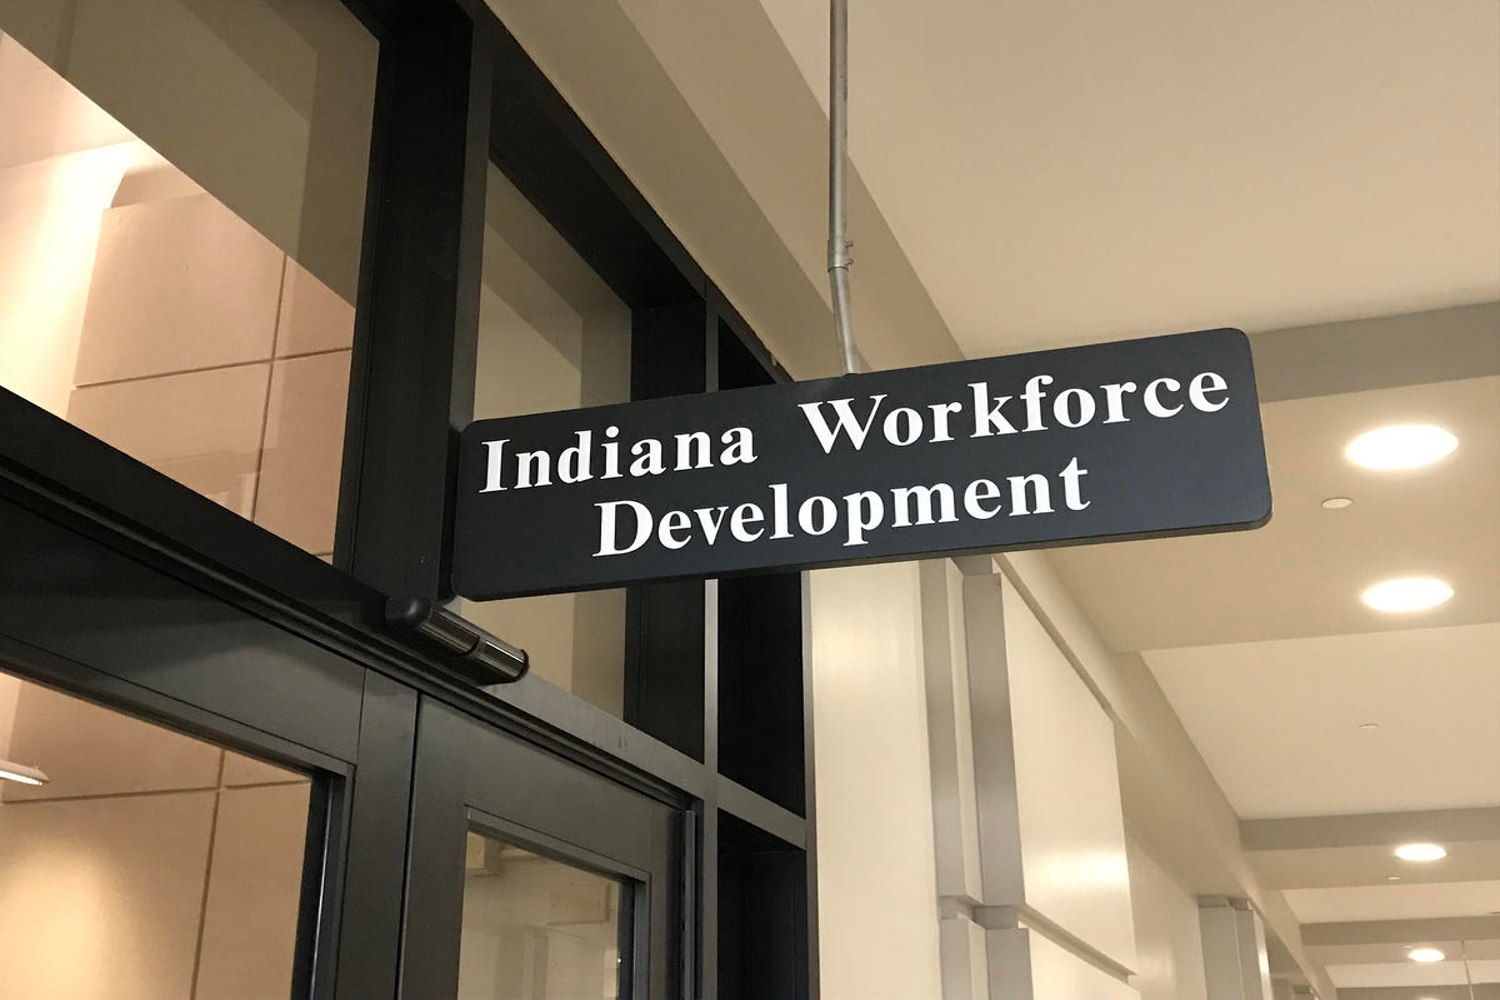 Indiana workforce development office